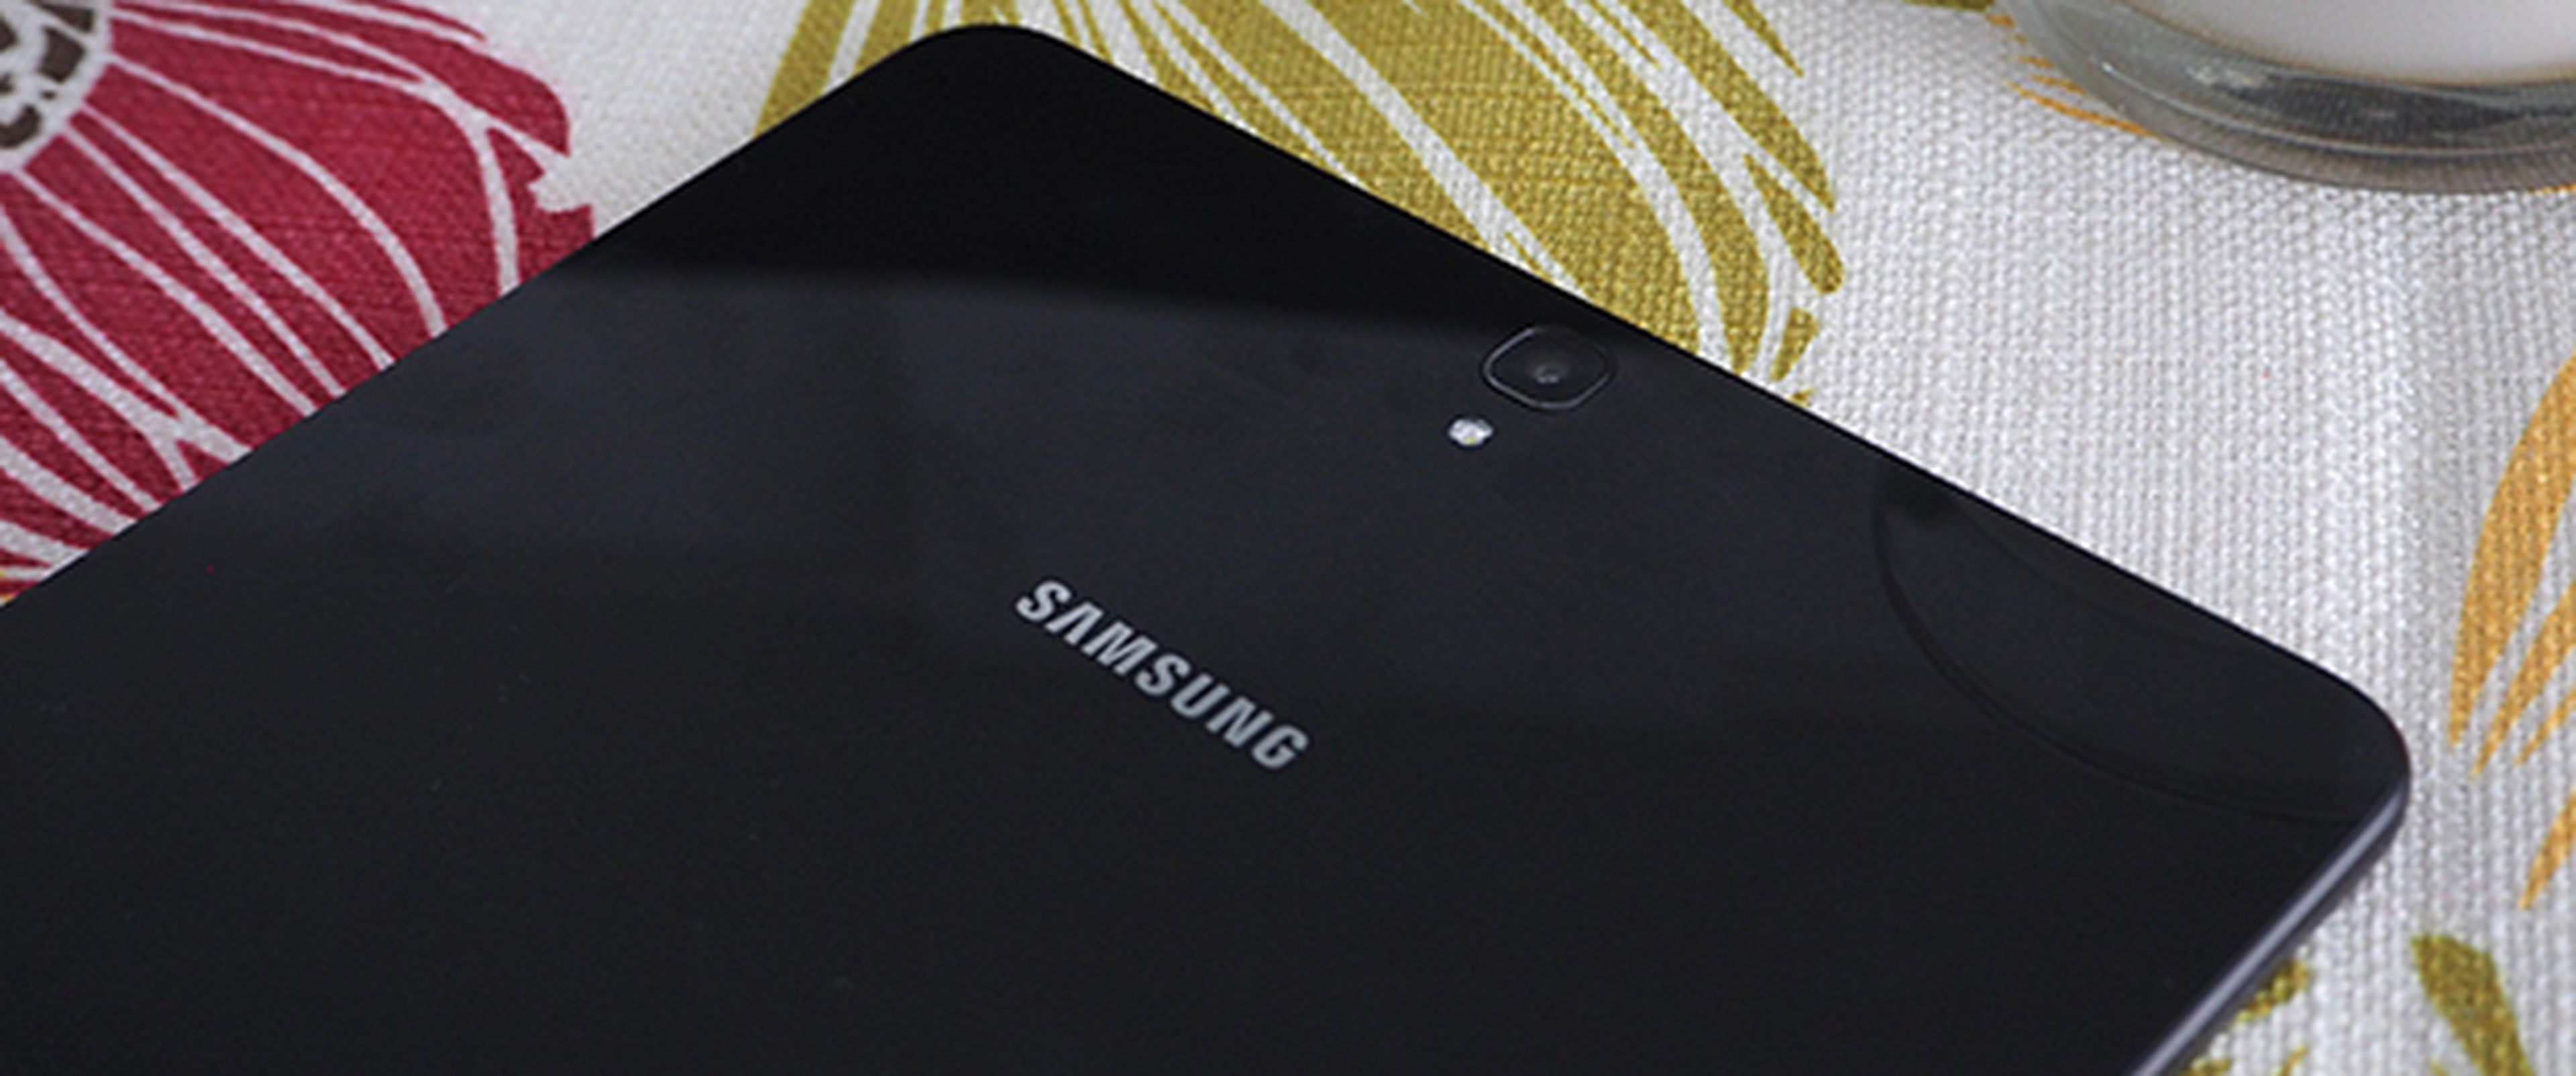 Samsung Galaxy Tab S3, análisis y opinión